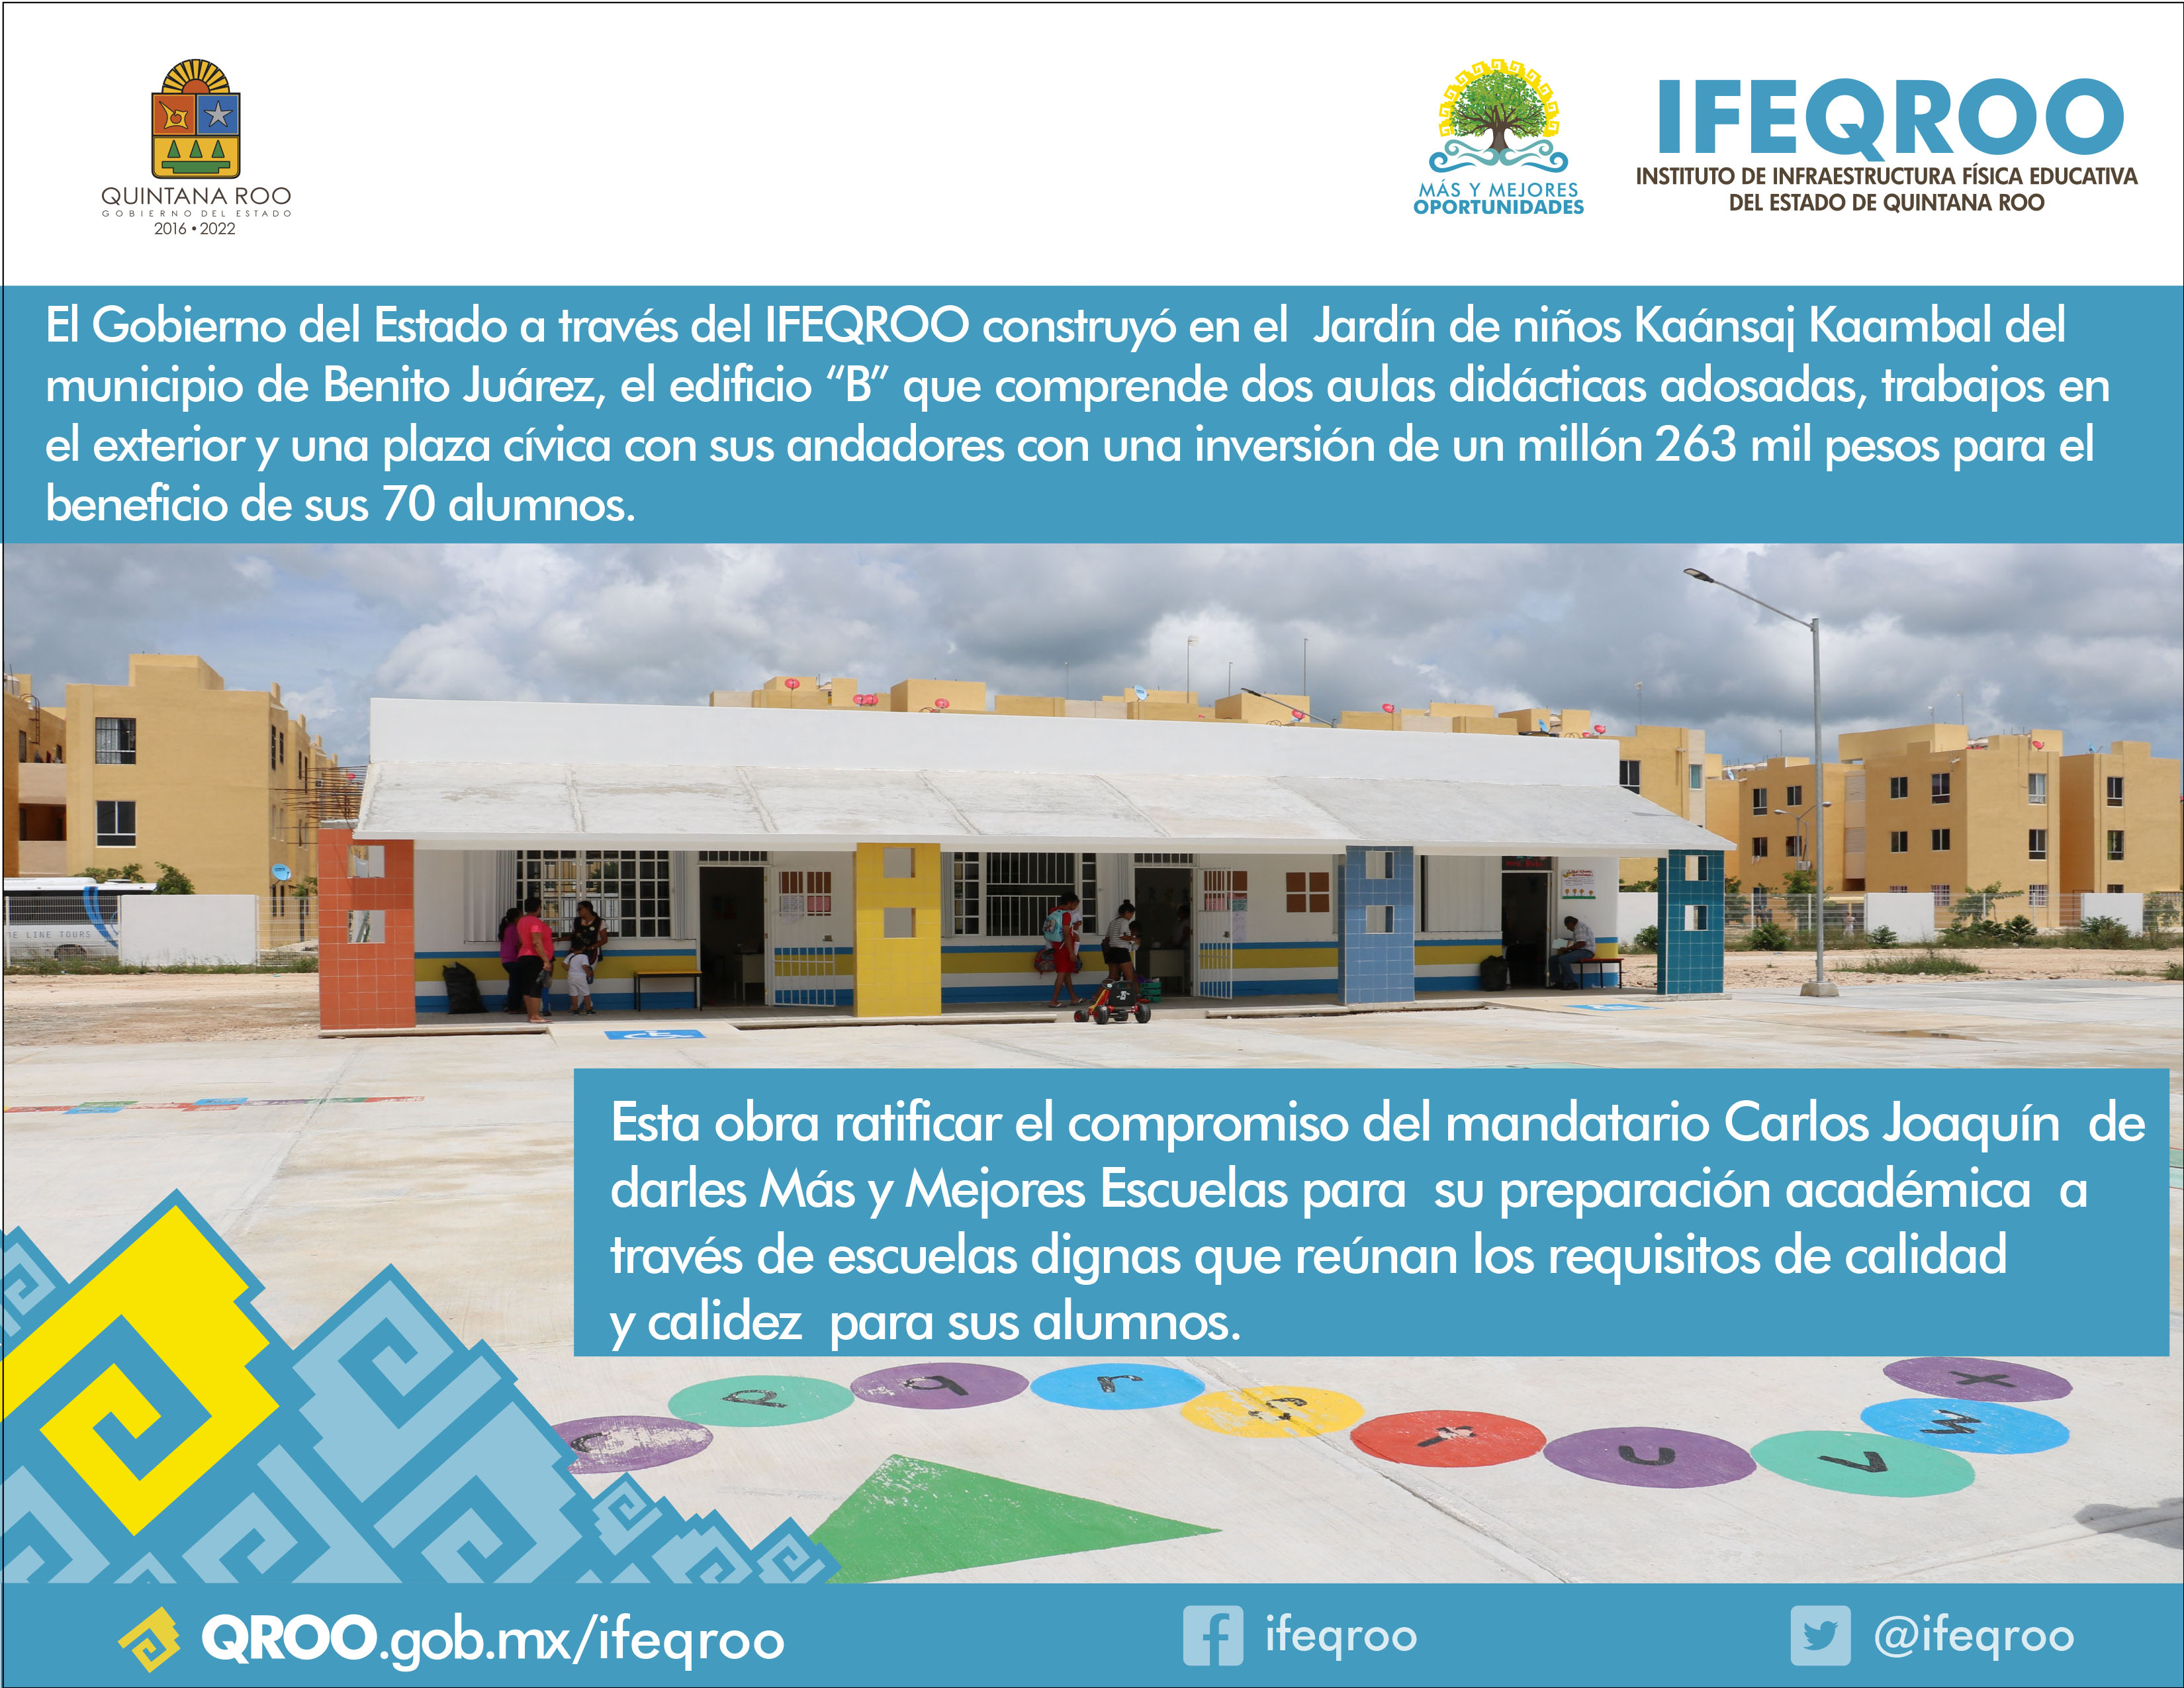 El Gobierno del Estado a través del IFEQROO, construyó el Edificio “B” en el jardín de niños Kaánsaj Kaambal, en el municipio de Benito Juárez